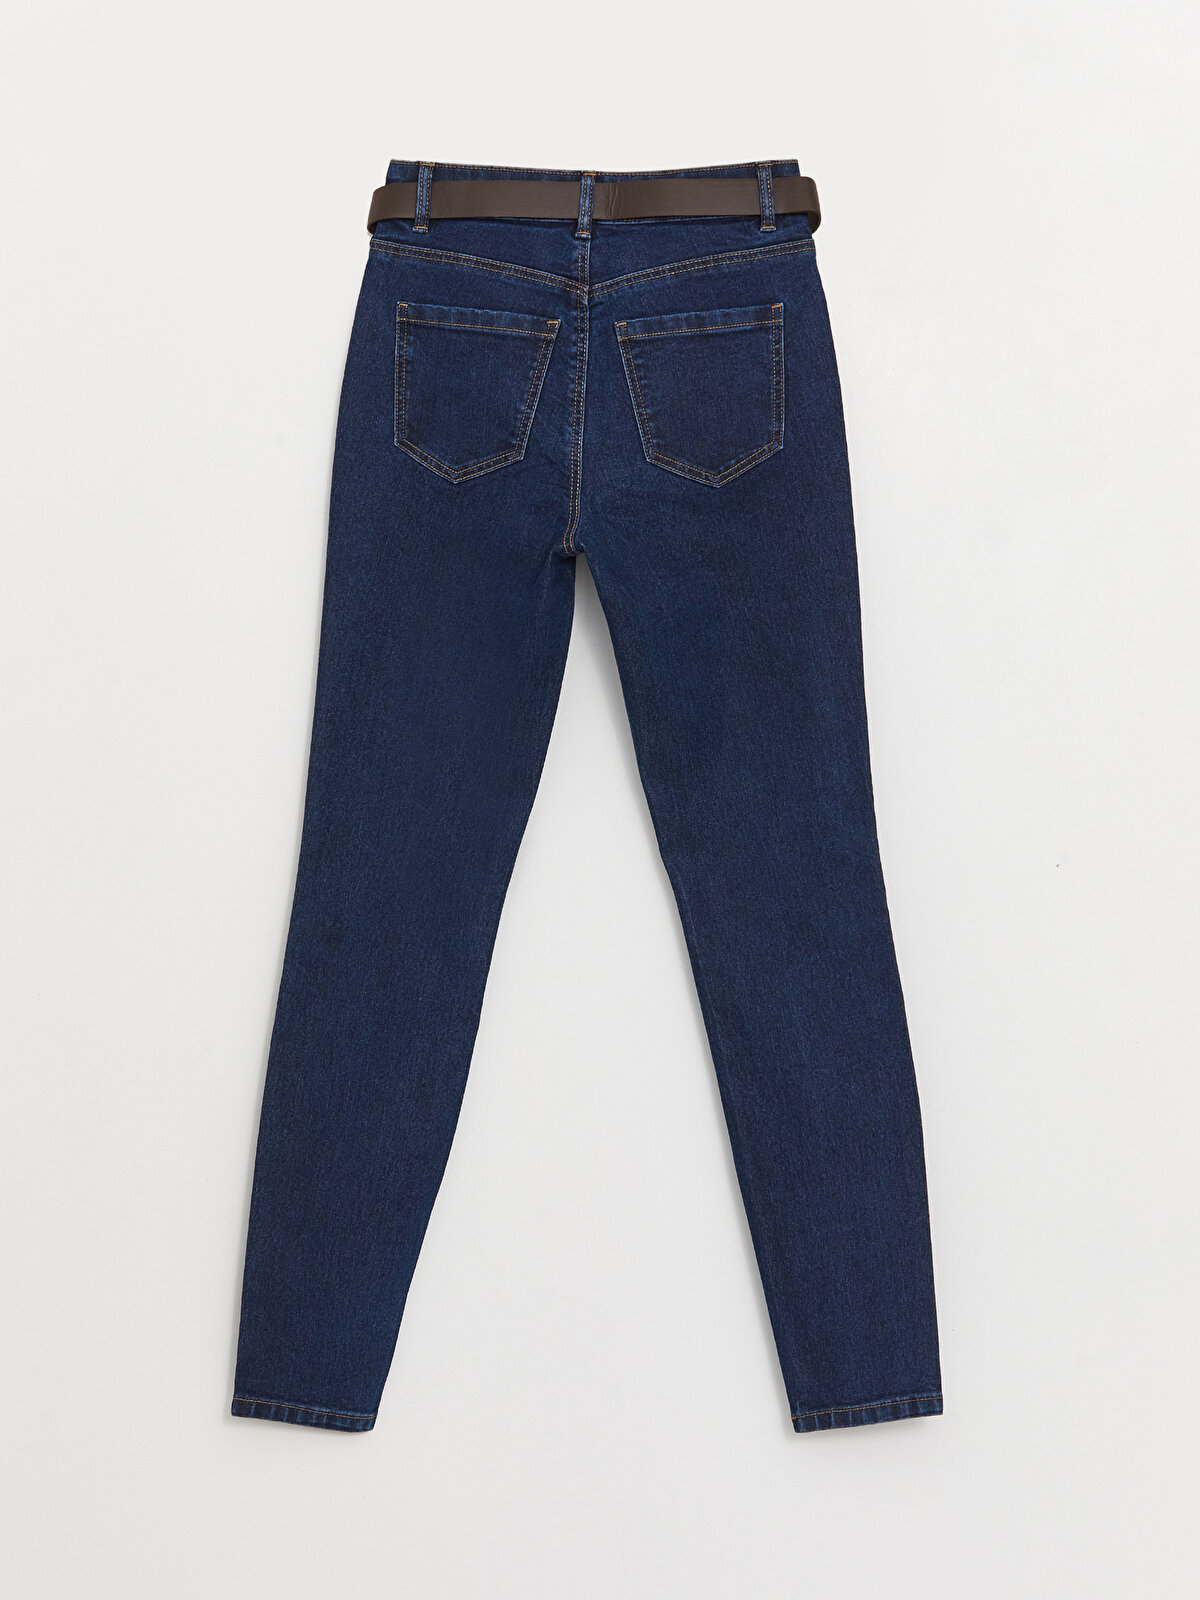 High Waist Belted Skinny Fit Women's Jeans -W38092Z8-309 - W38092Z8-309 -  LC Waikiki